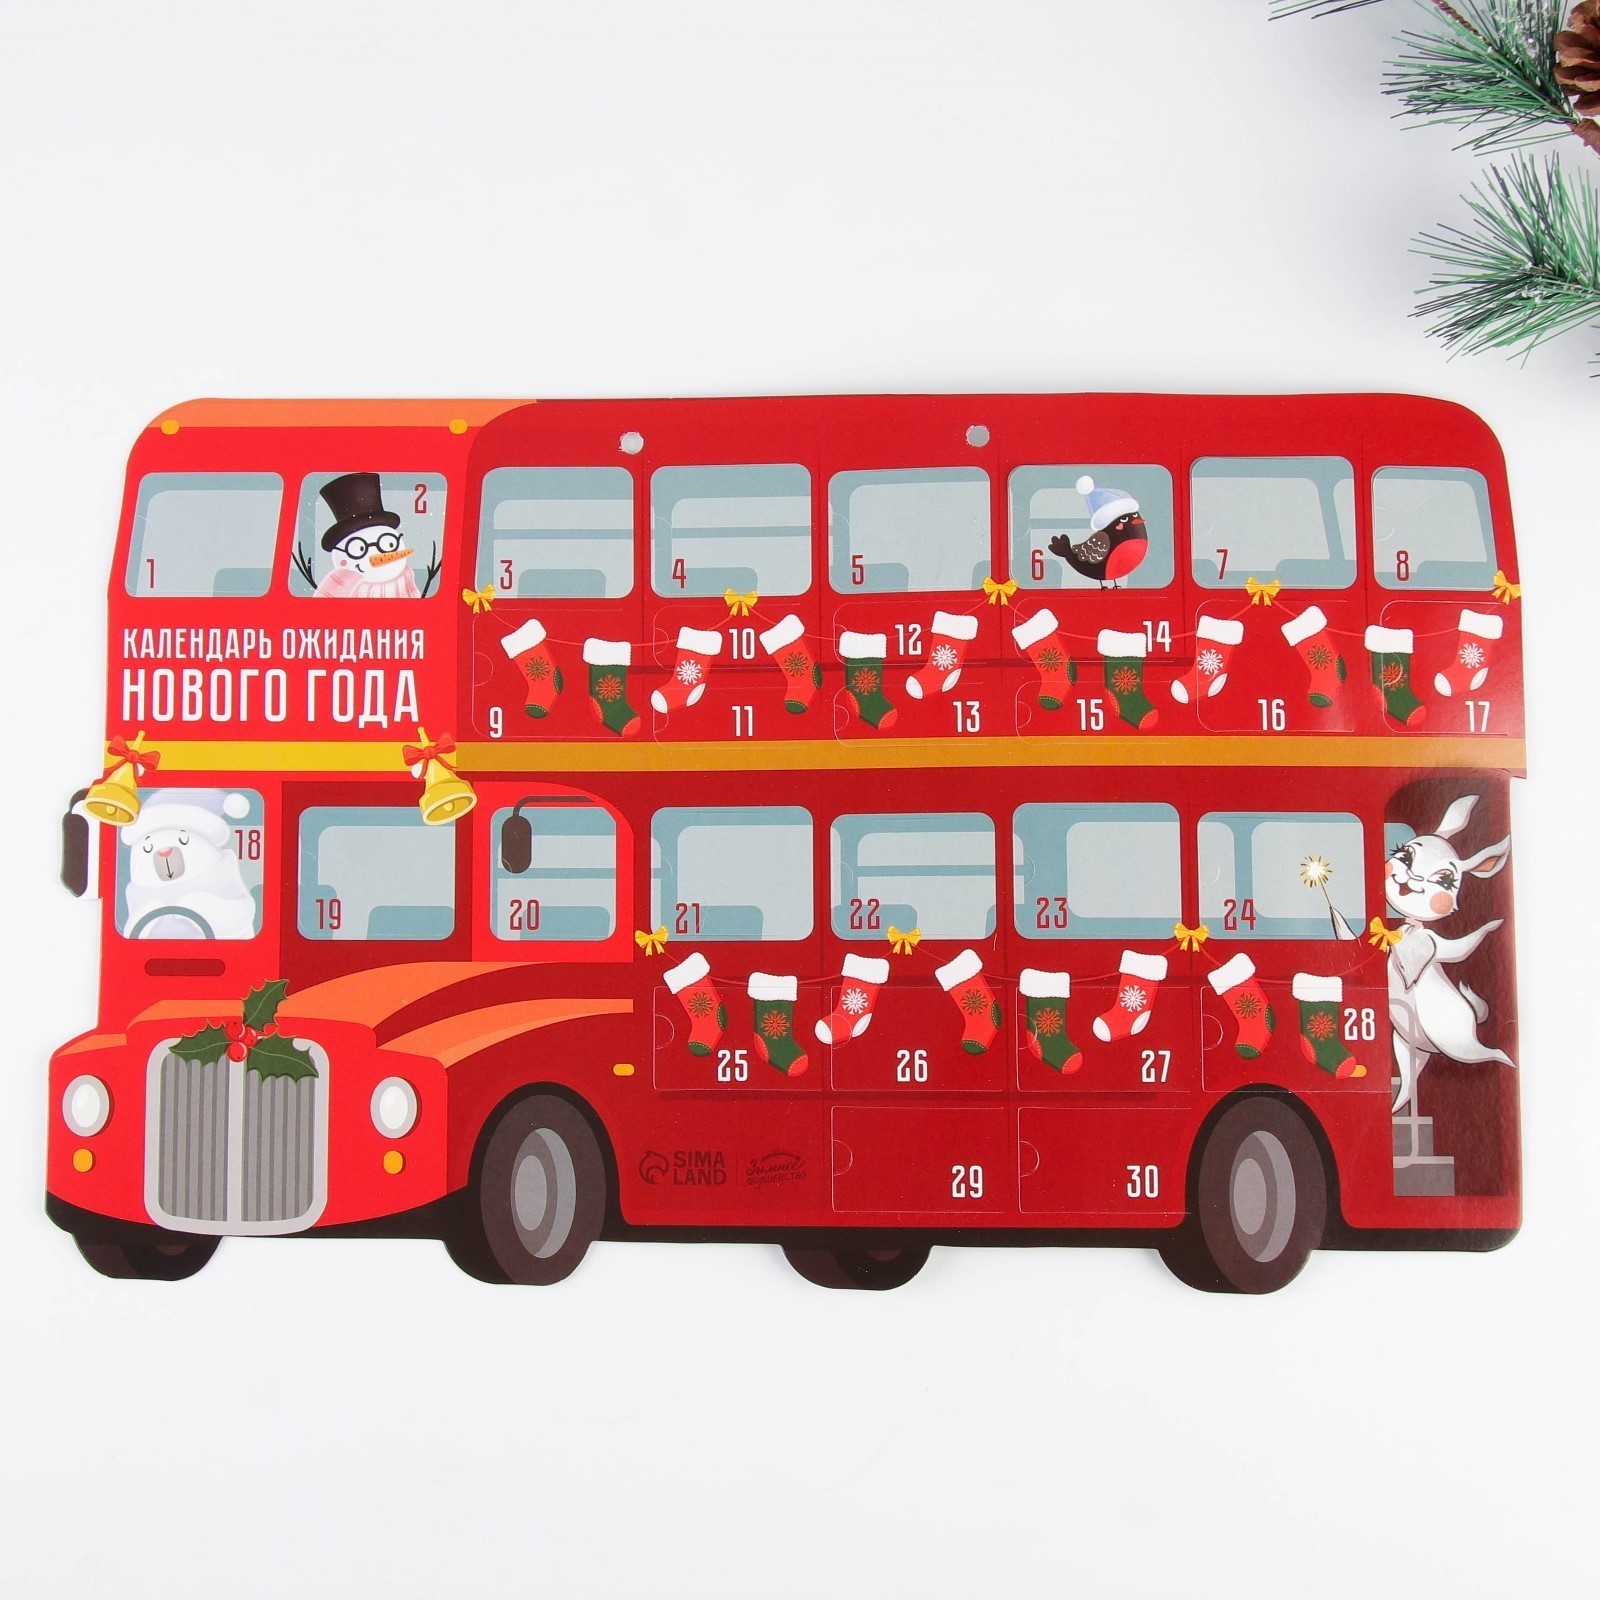 Календарь ожидания Нового года «Автобус», 29,7 х 42 см       7598438